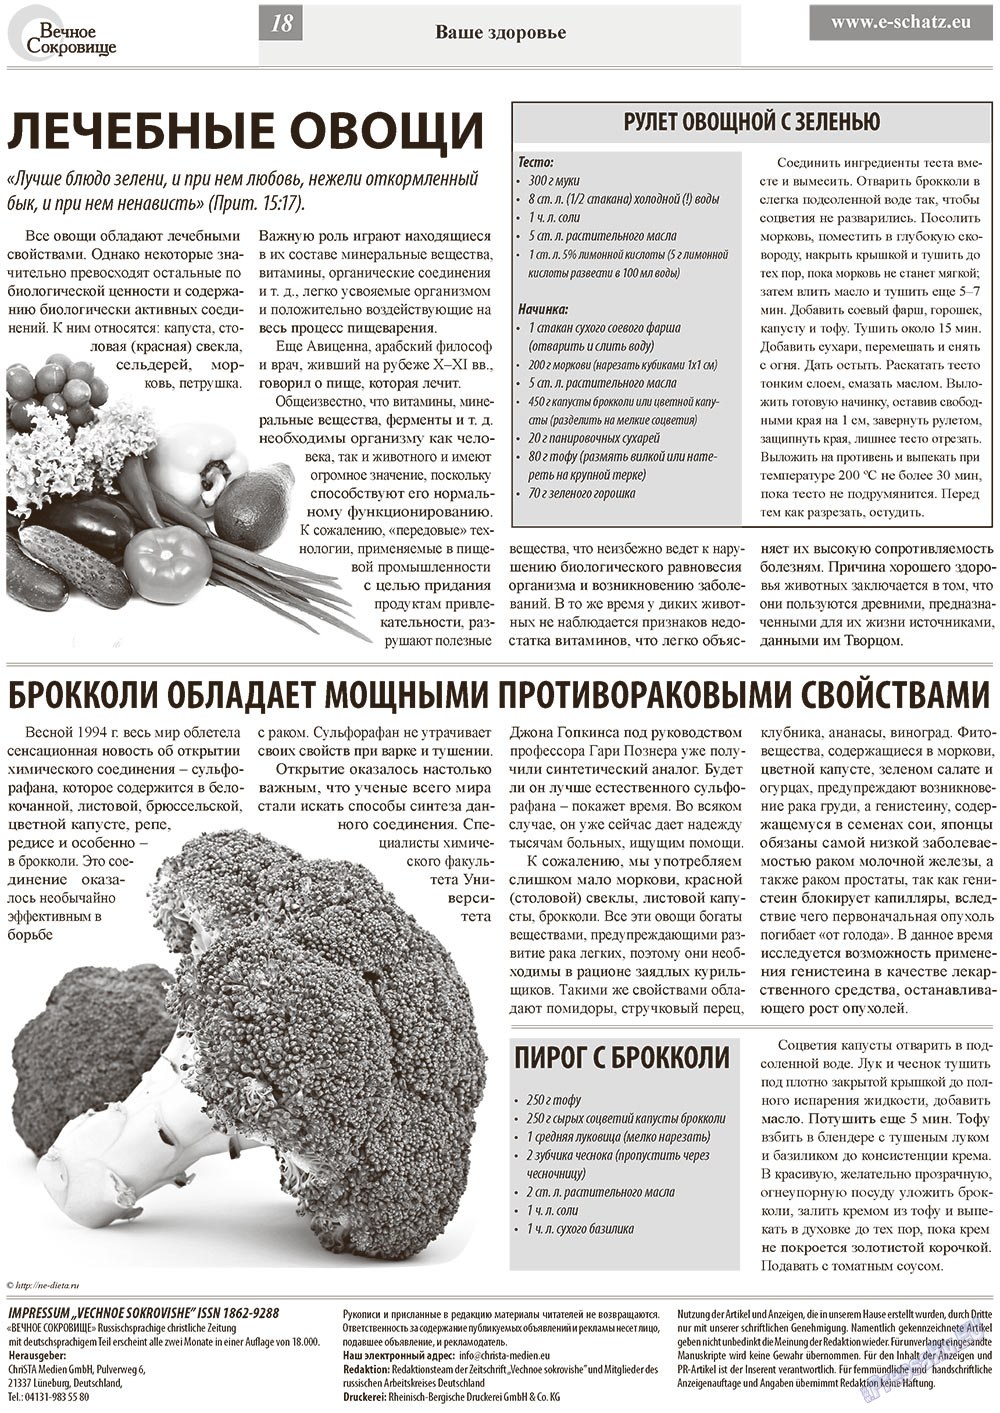 Вечное сокровище, газета. 2013 №1 стр.18